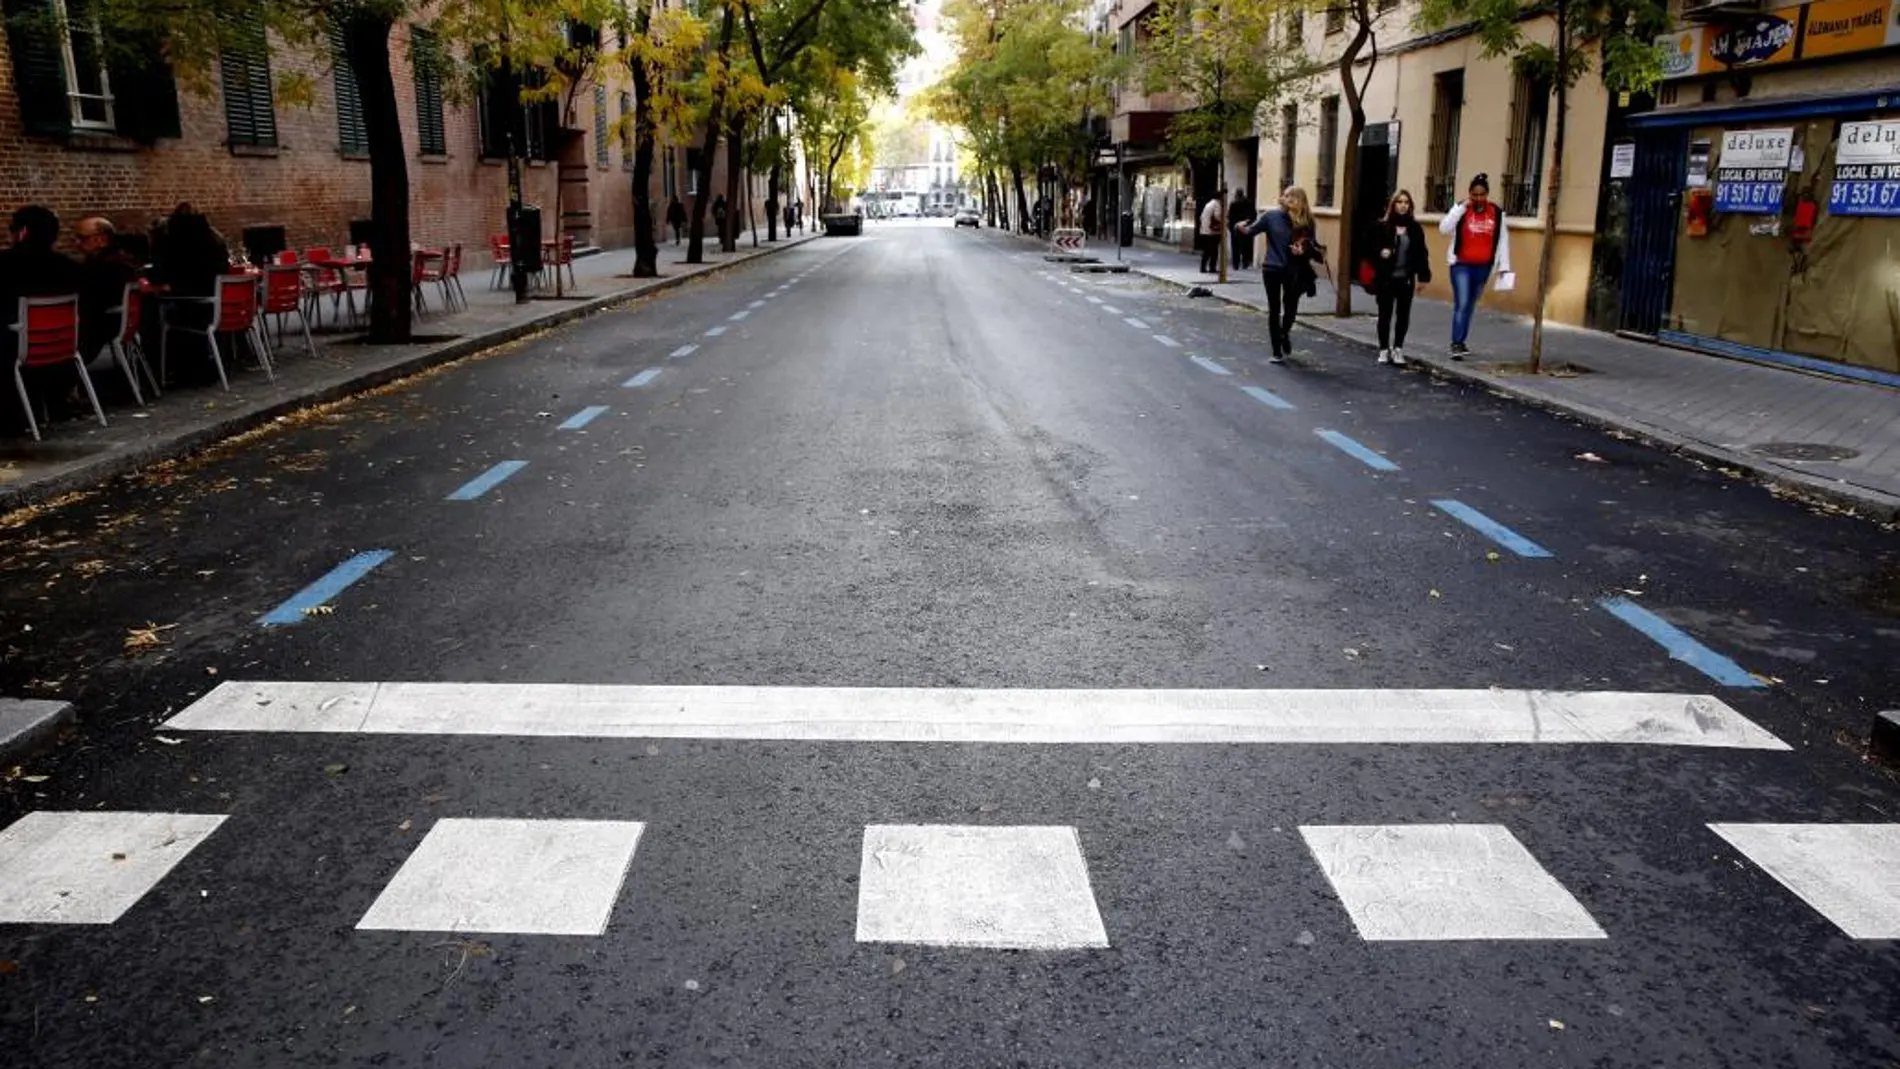 Imagen de una calle de Madrid durante los días en que hubo restricciones al aparcamiento en el centro de la ciudad